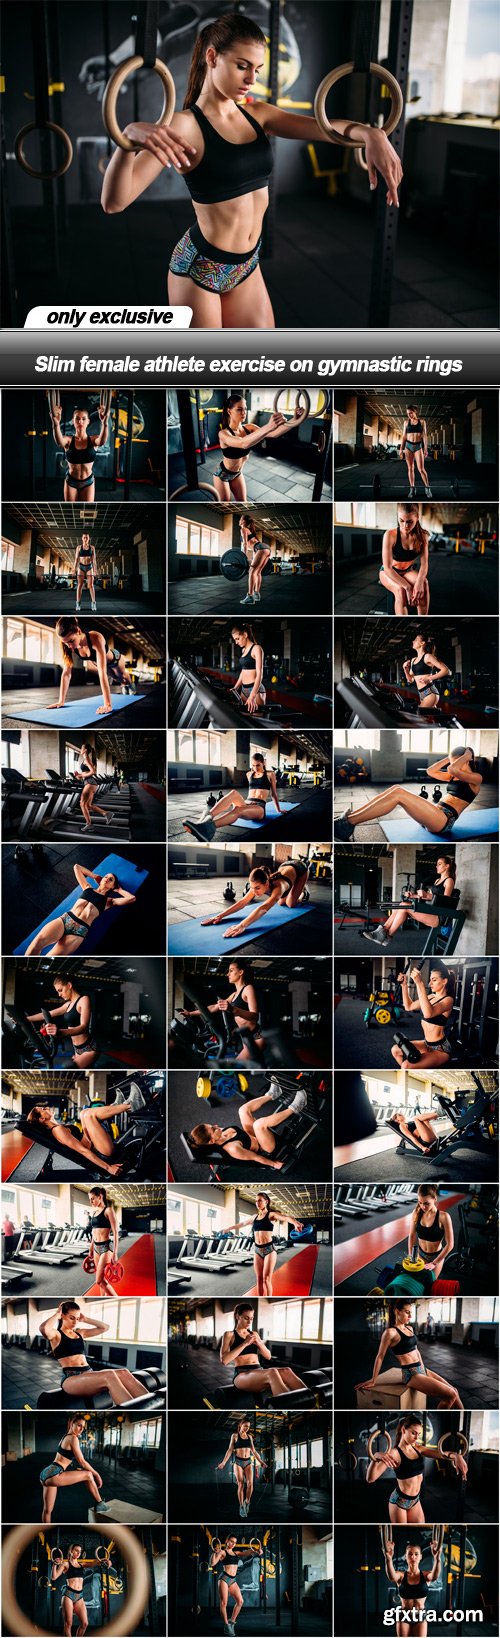 Slim female athlete exercise on gymnastic rings - 32 UHQ JPEG